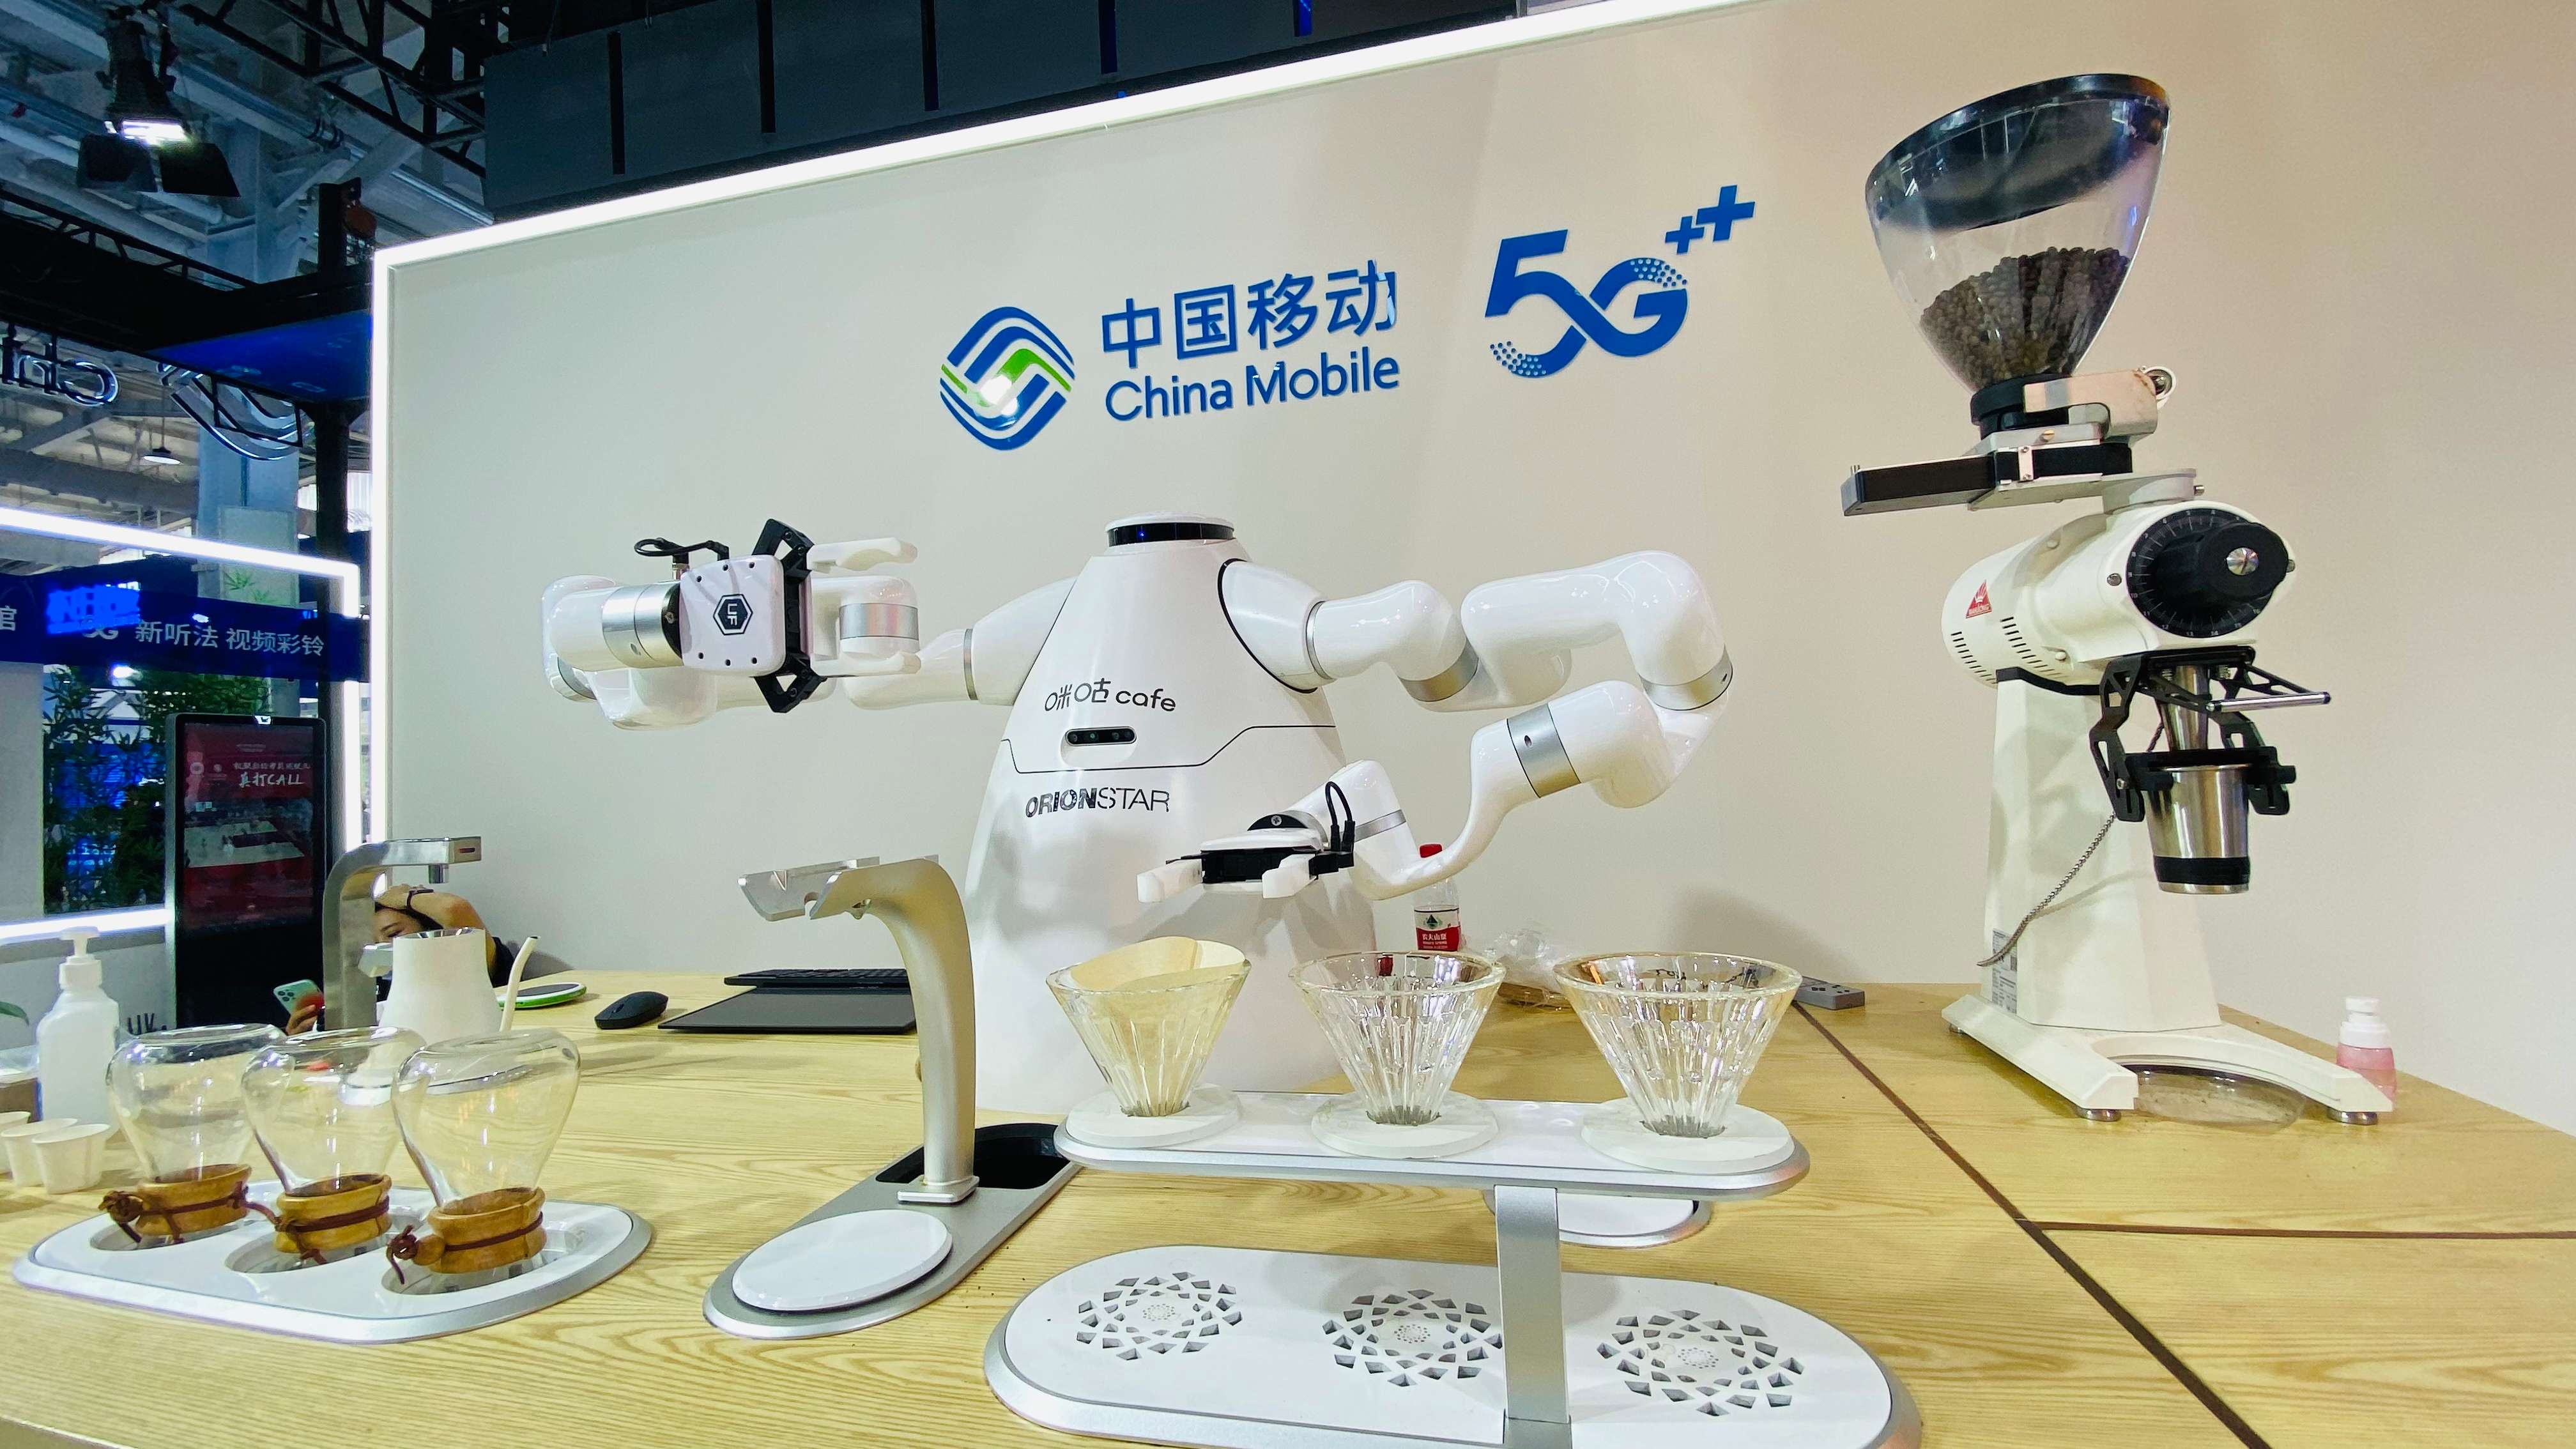 電信、計算機、信息服務展館中國移動展示的智能機器人。人民網記者張桂貴 攝